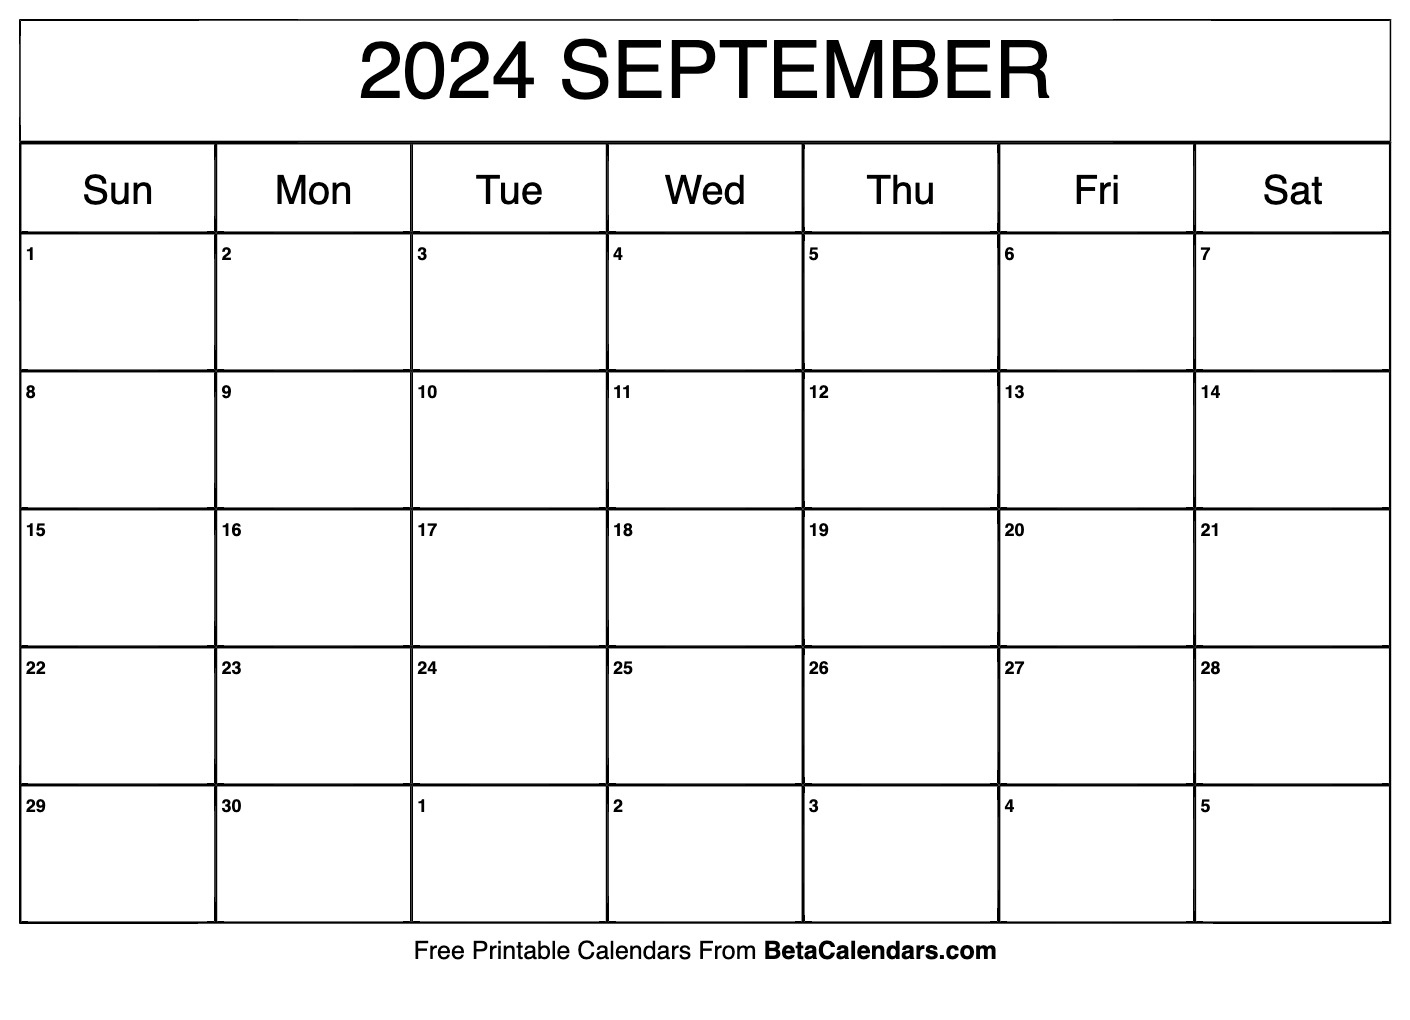 Free Printable September 2024 Calendar intended for Free Printable August September 2024 Calendar